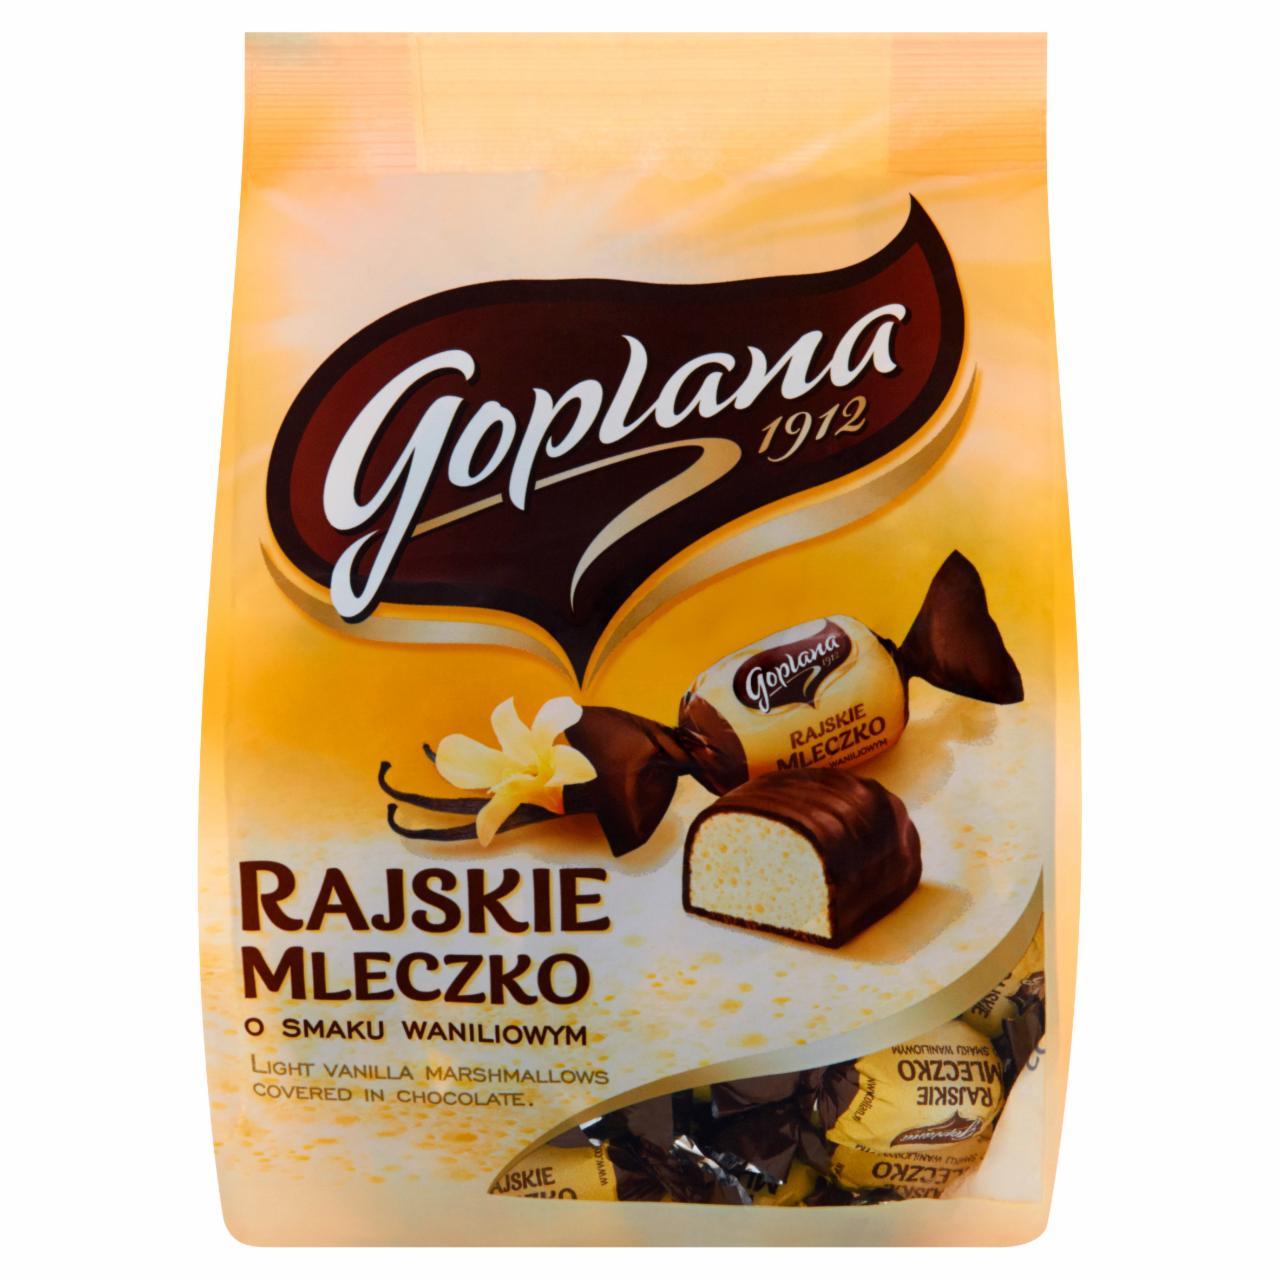 Zdjęcia - Goplana Rajskie Mleczko o smaku waniliowym Cukierki czekoladowane 210 g